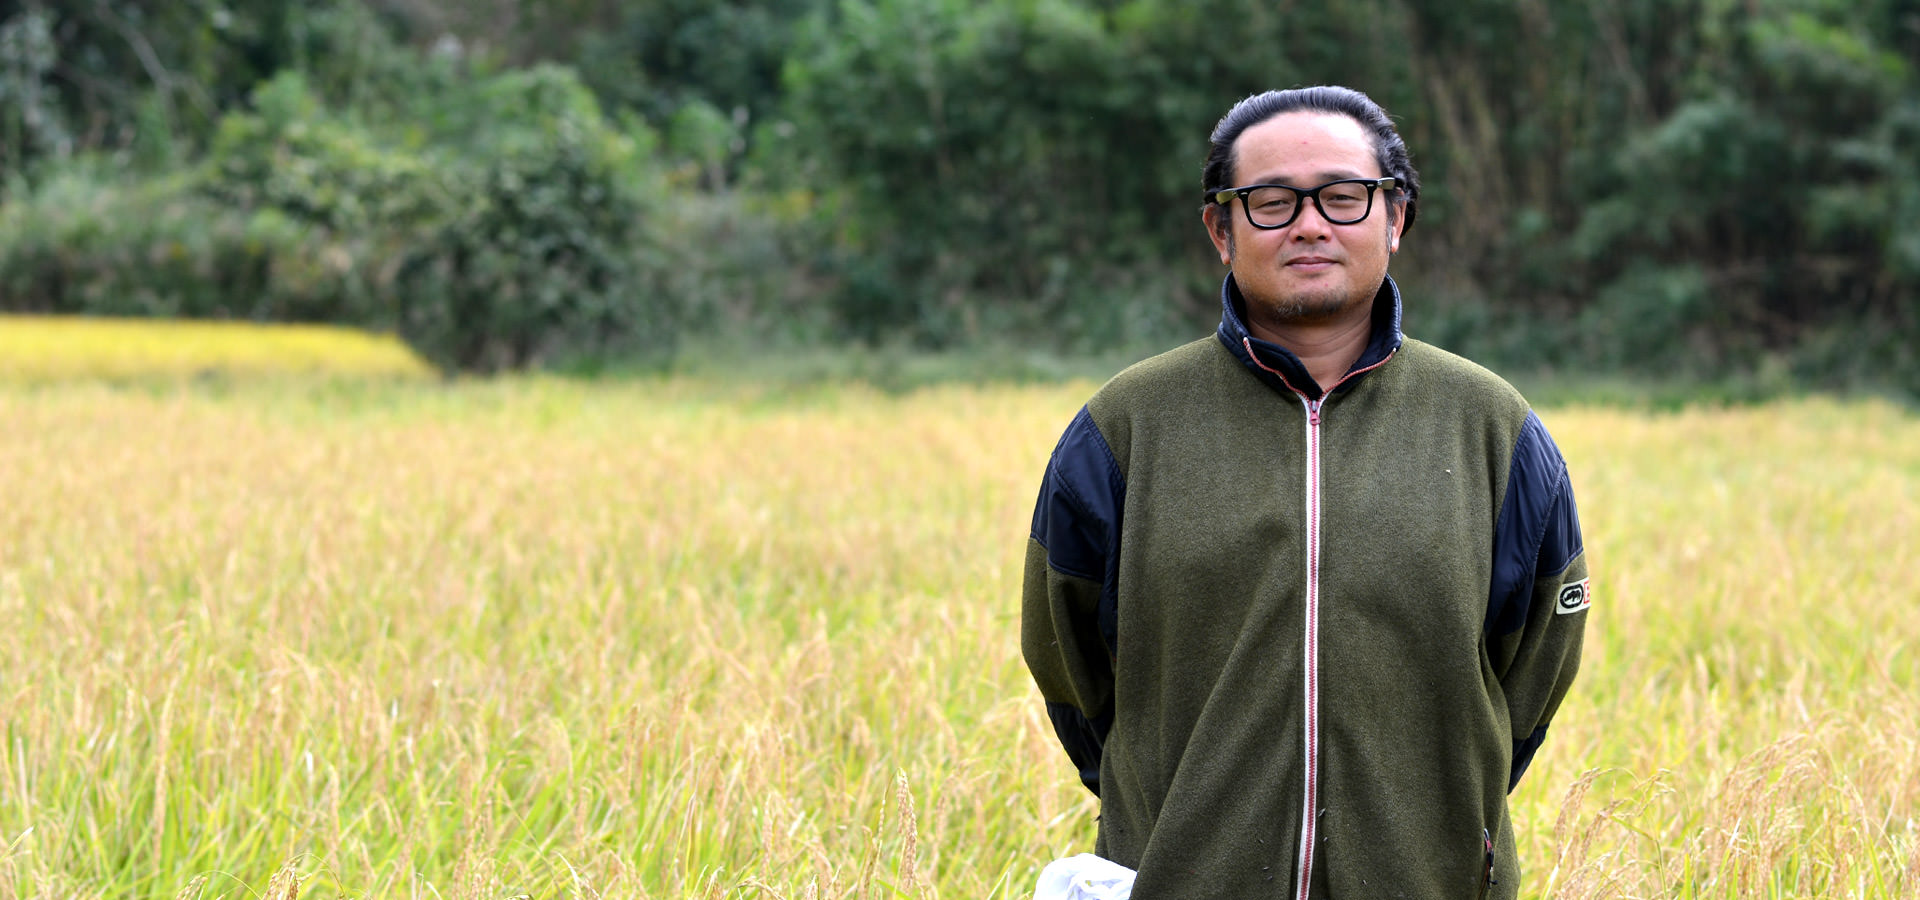 平成29年度、熊本南阿蘇産。大森博さんが作る、無農薬・無施肥栽培のお米